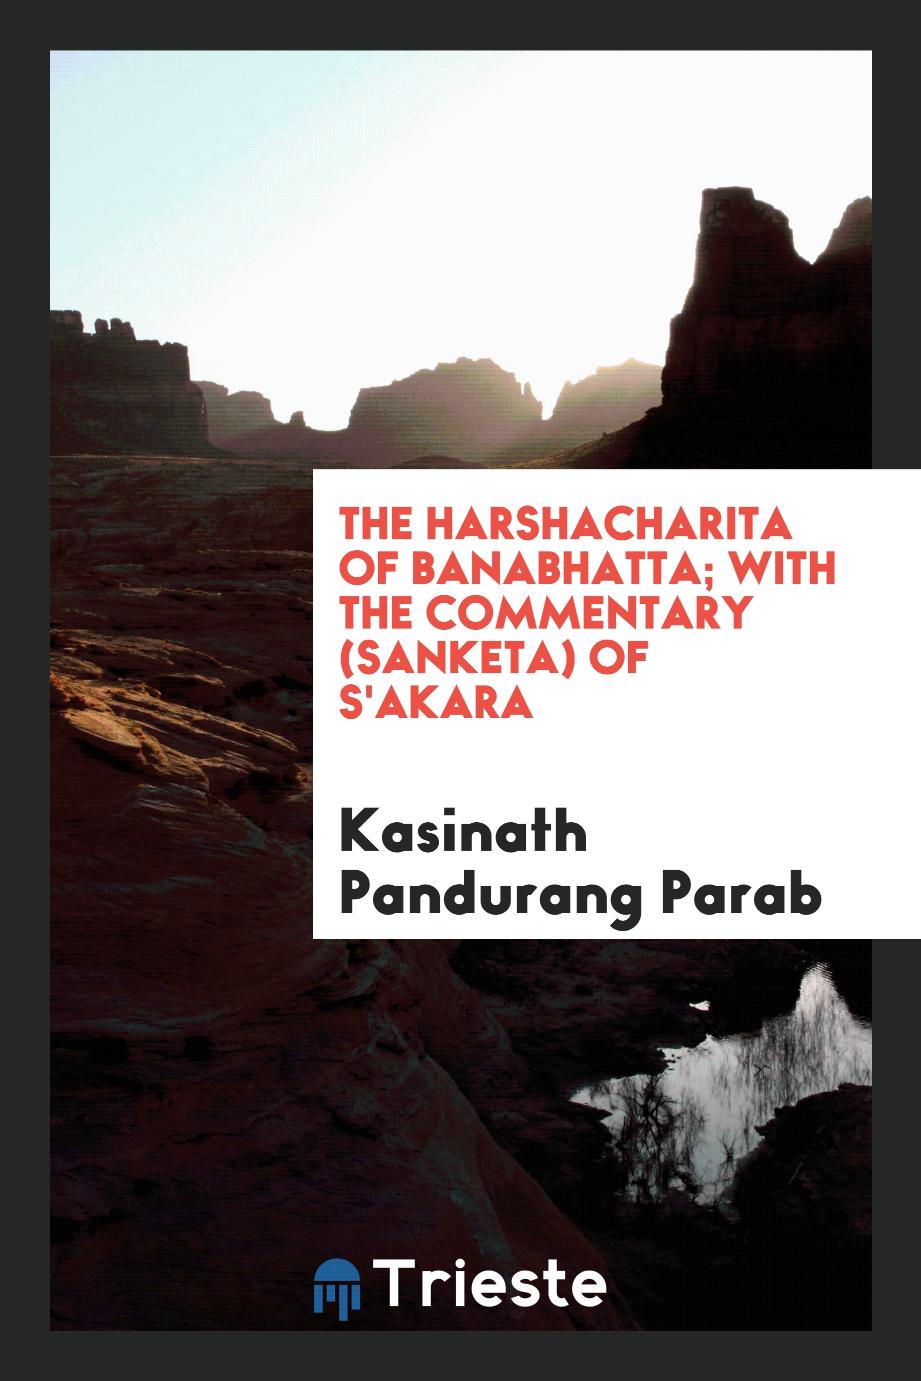 The Harshacharita of Banabhatta; with the commentary (Sanketa) of S'akara